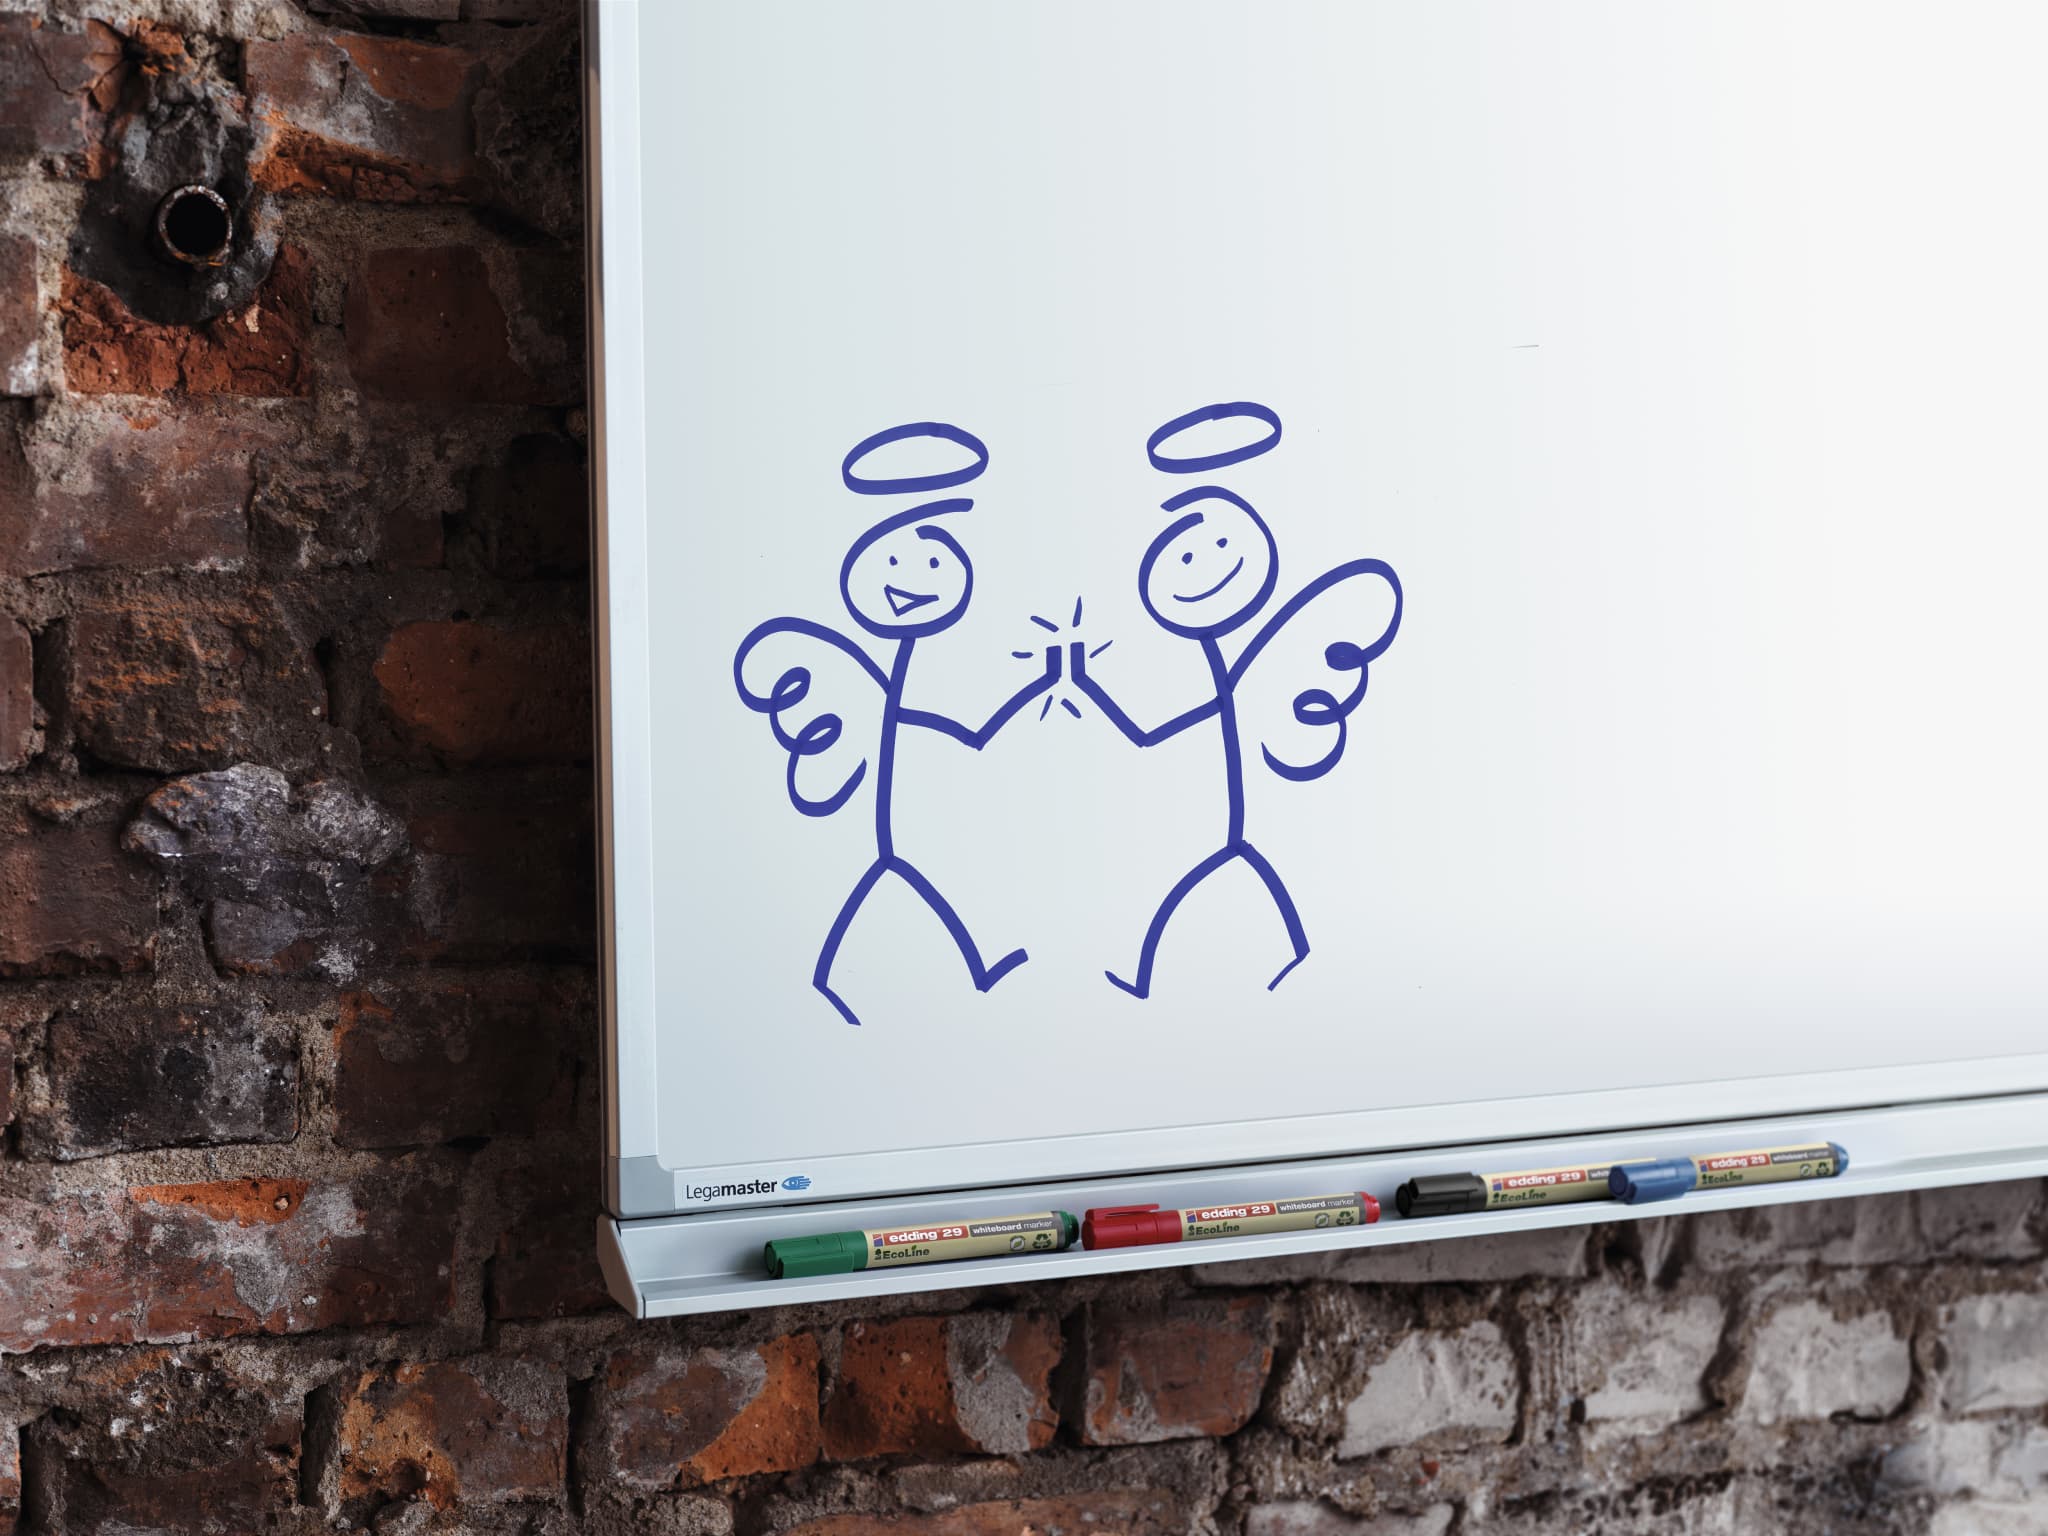 Beschreibung: Gekritzel von zwei Skurrilen, engelsgleichen Figuren, gezeichnet mit einem edding 29 EcoLine Whiteboardmarker aus recyceltem Material auf einer Tafel.